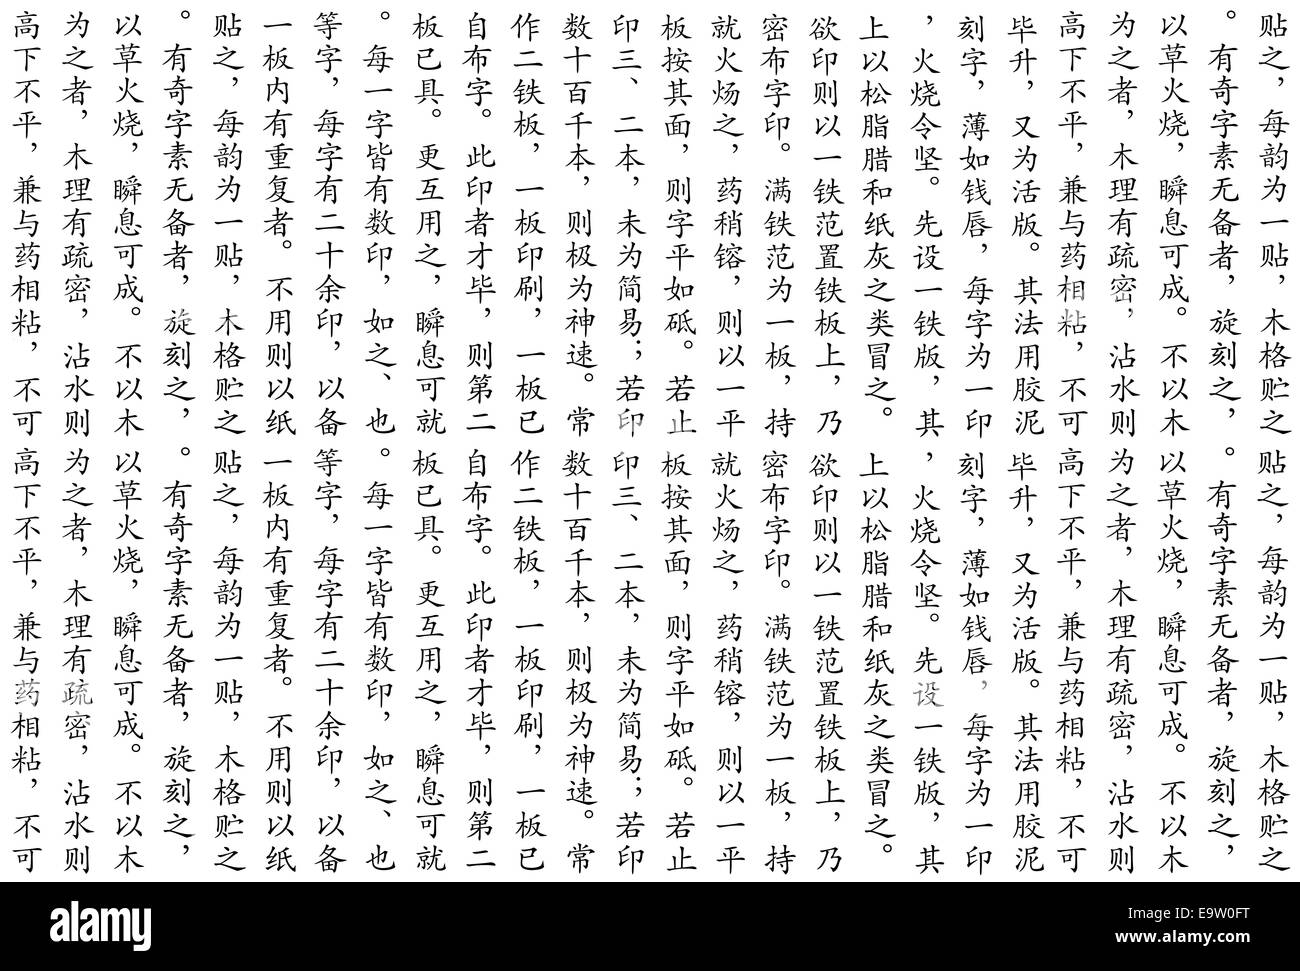 Letras chinas Imágenes de stock en blanco y negro - Alamy